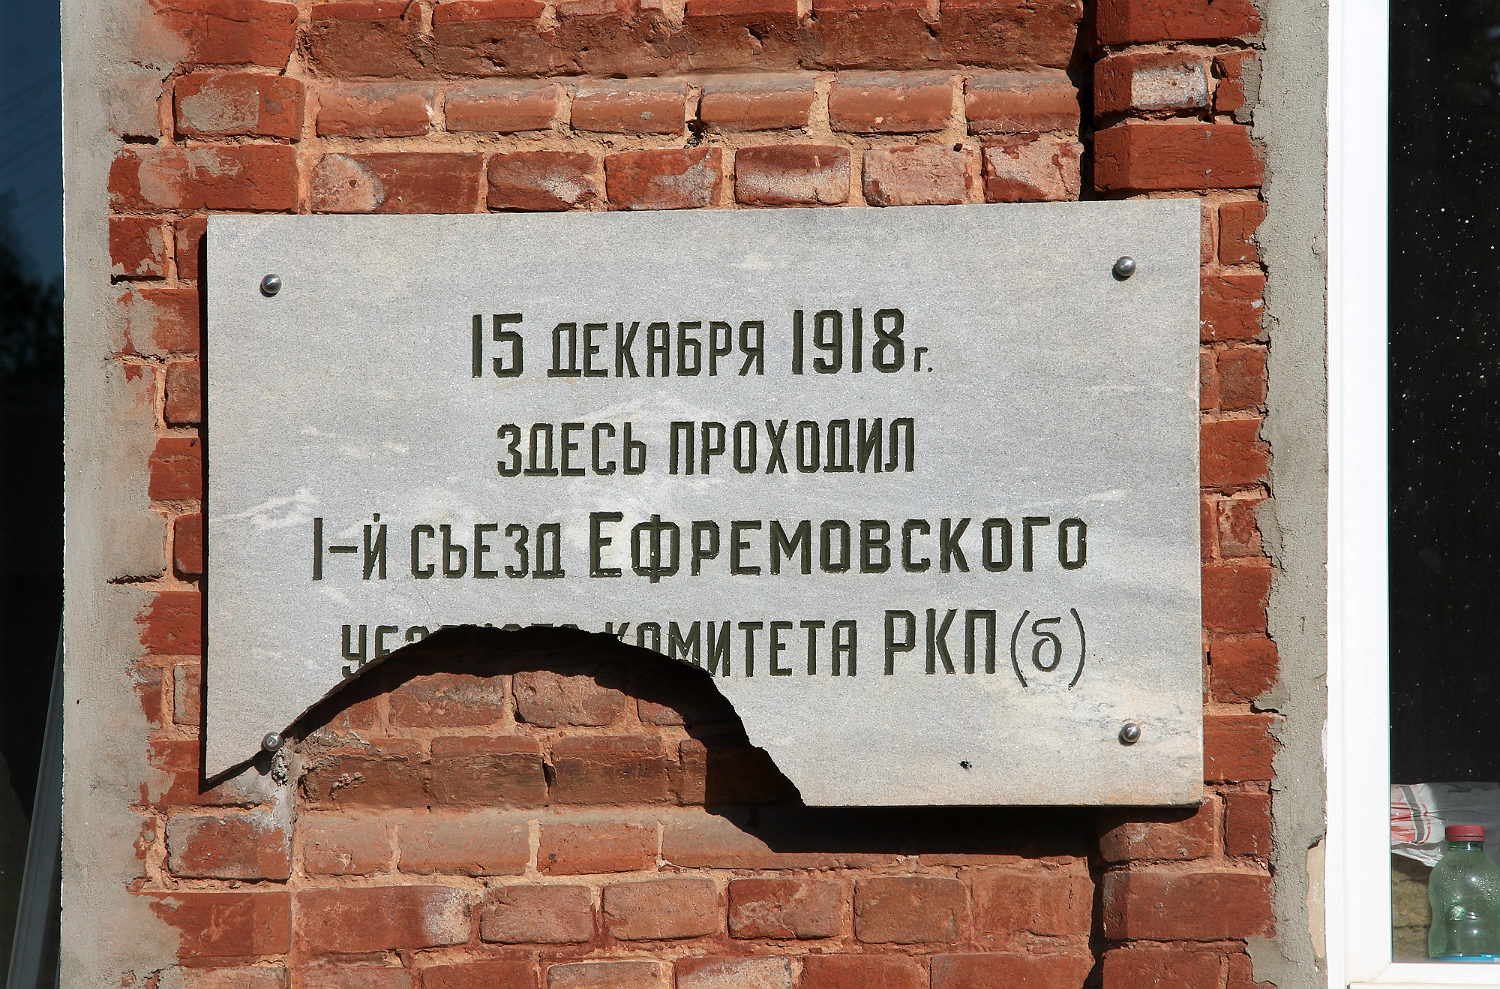 Jefremow, Улица Карла Маркса, 46. Jefremow — Memorial plaques